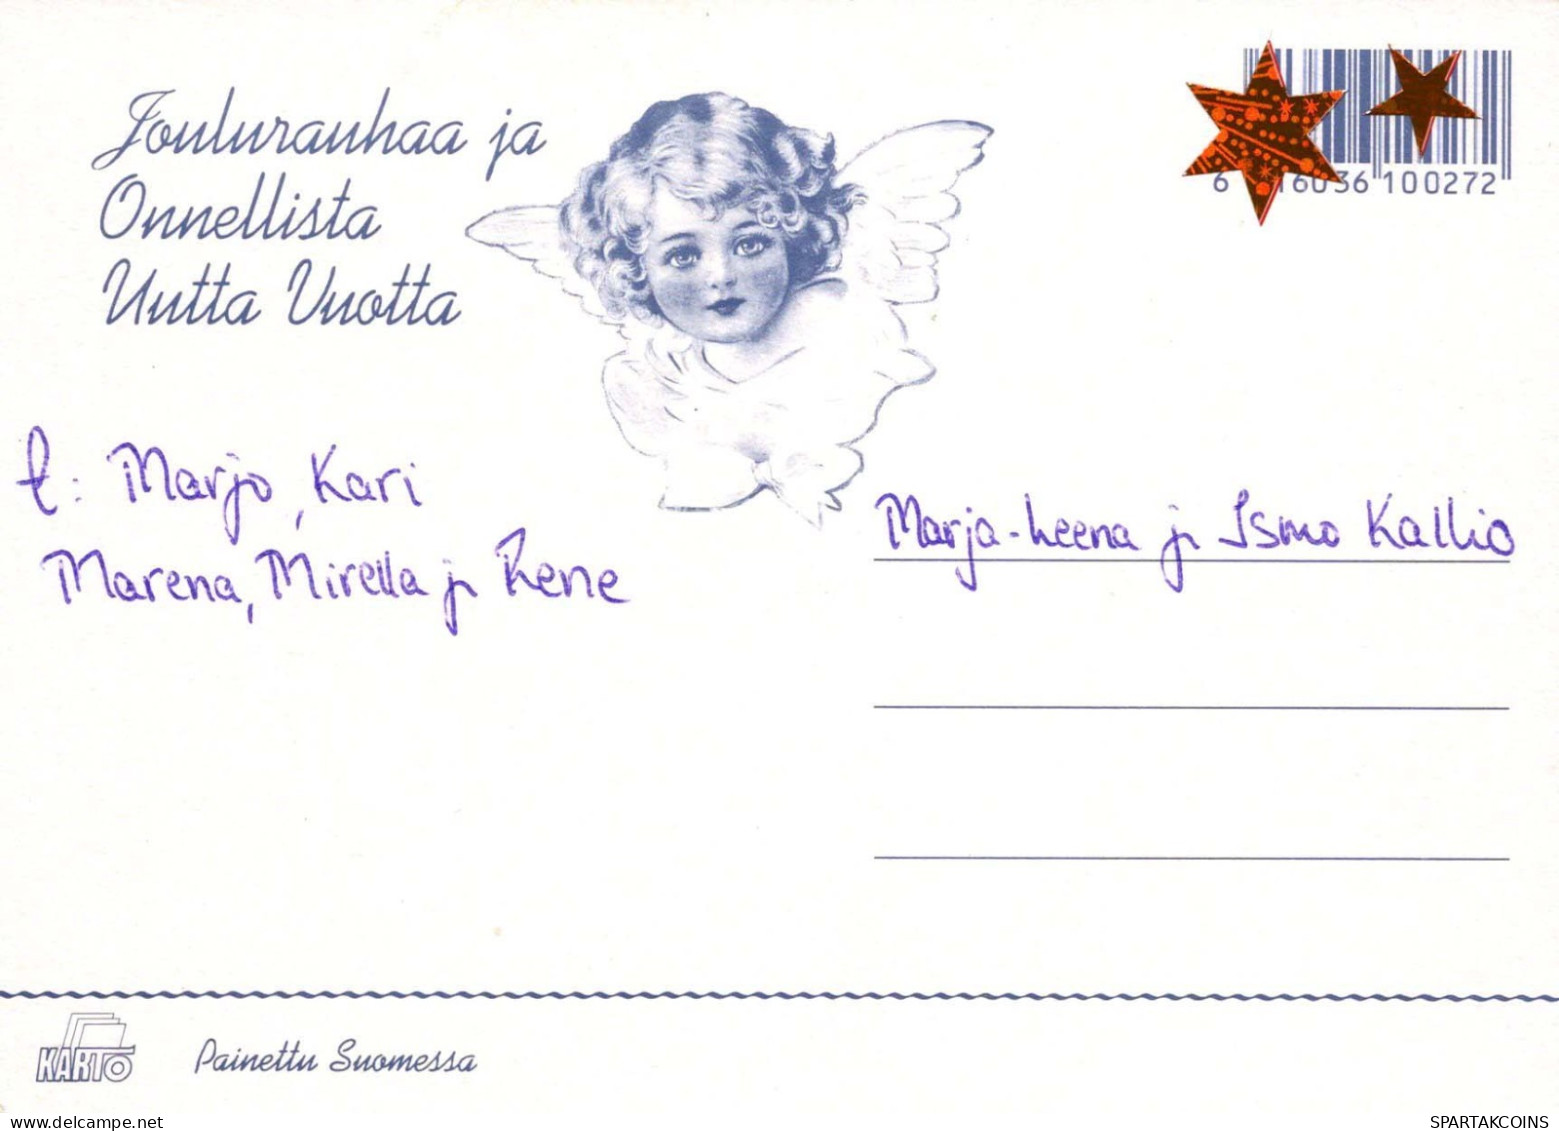 Vierge Marie Madone Bébé JÉSUS Noël Religion Vintage Carte Postale CPSM #PBB925.A - Maagd Maria En Madonnas